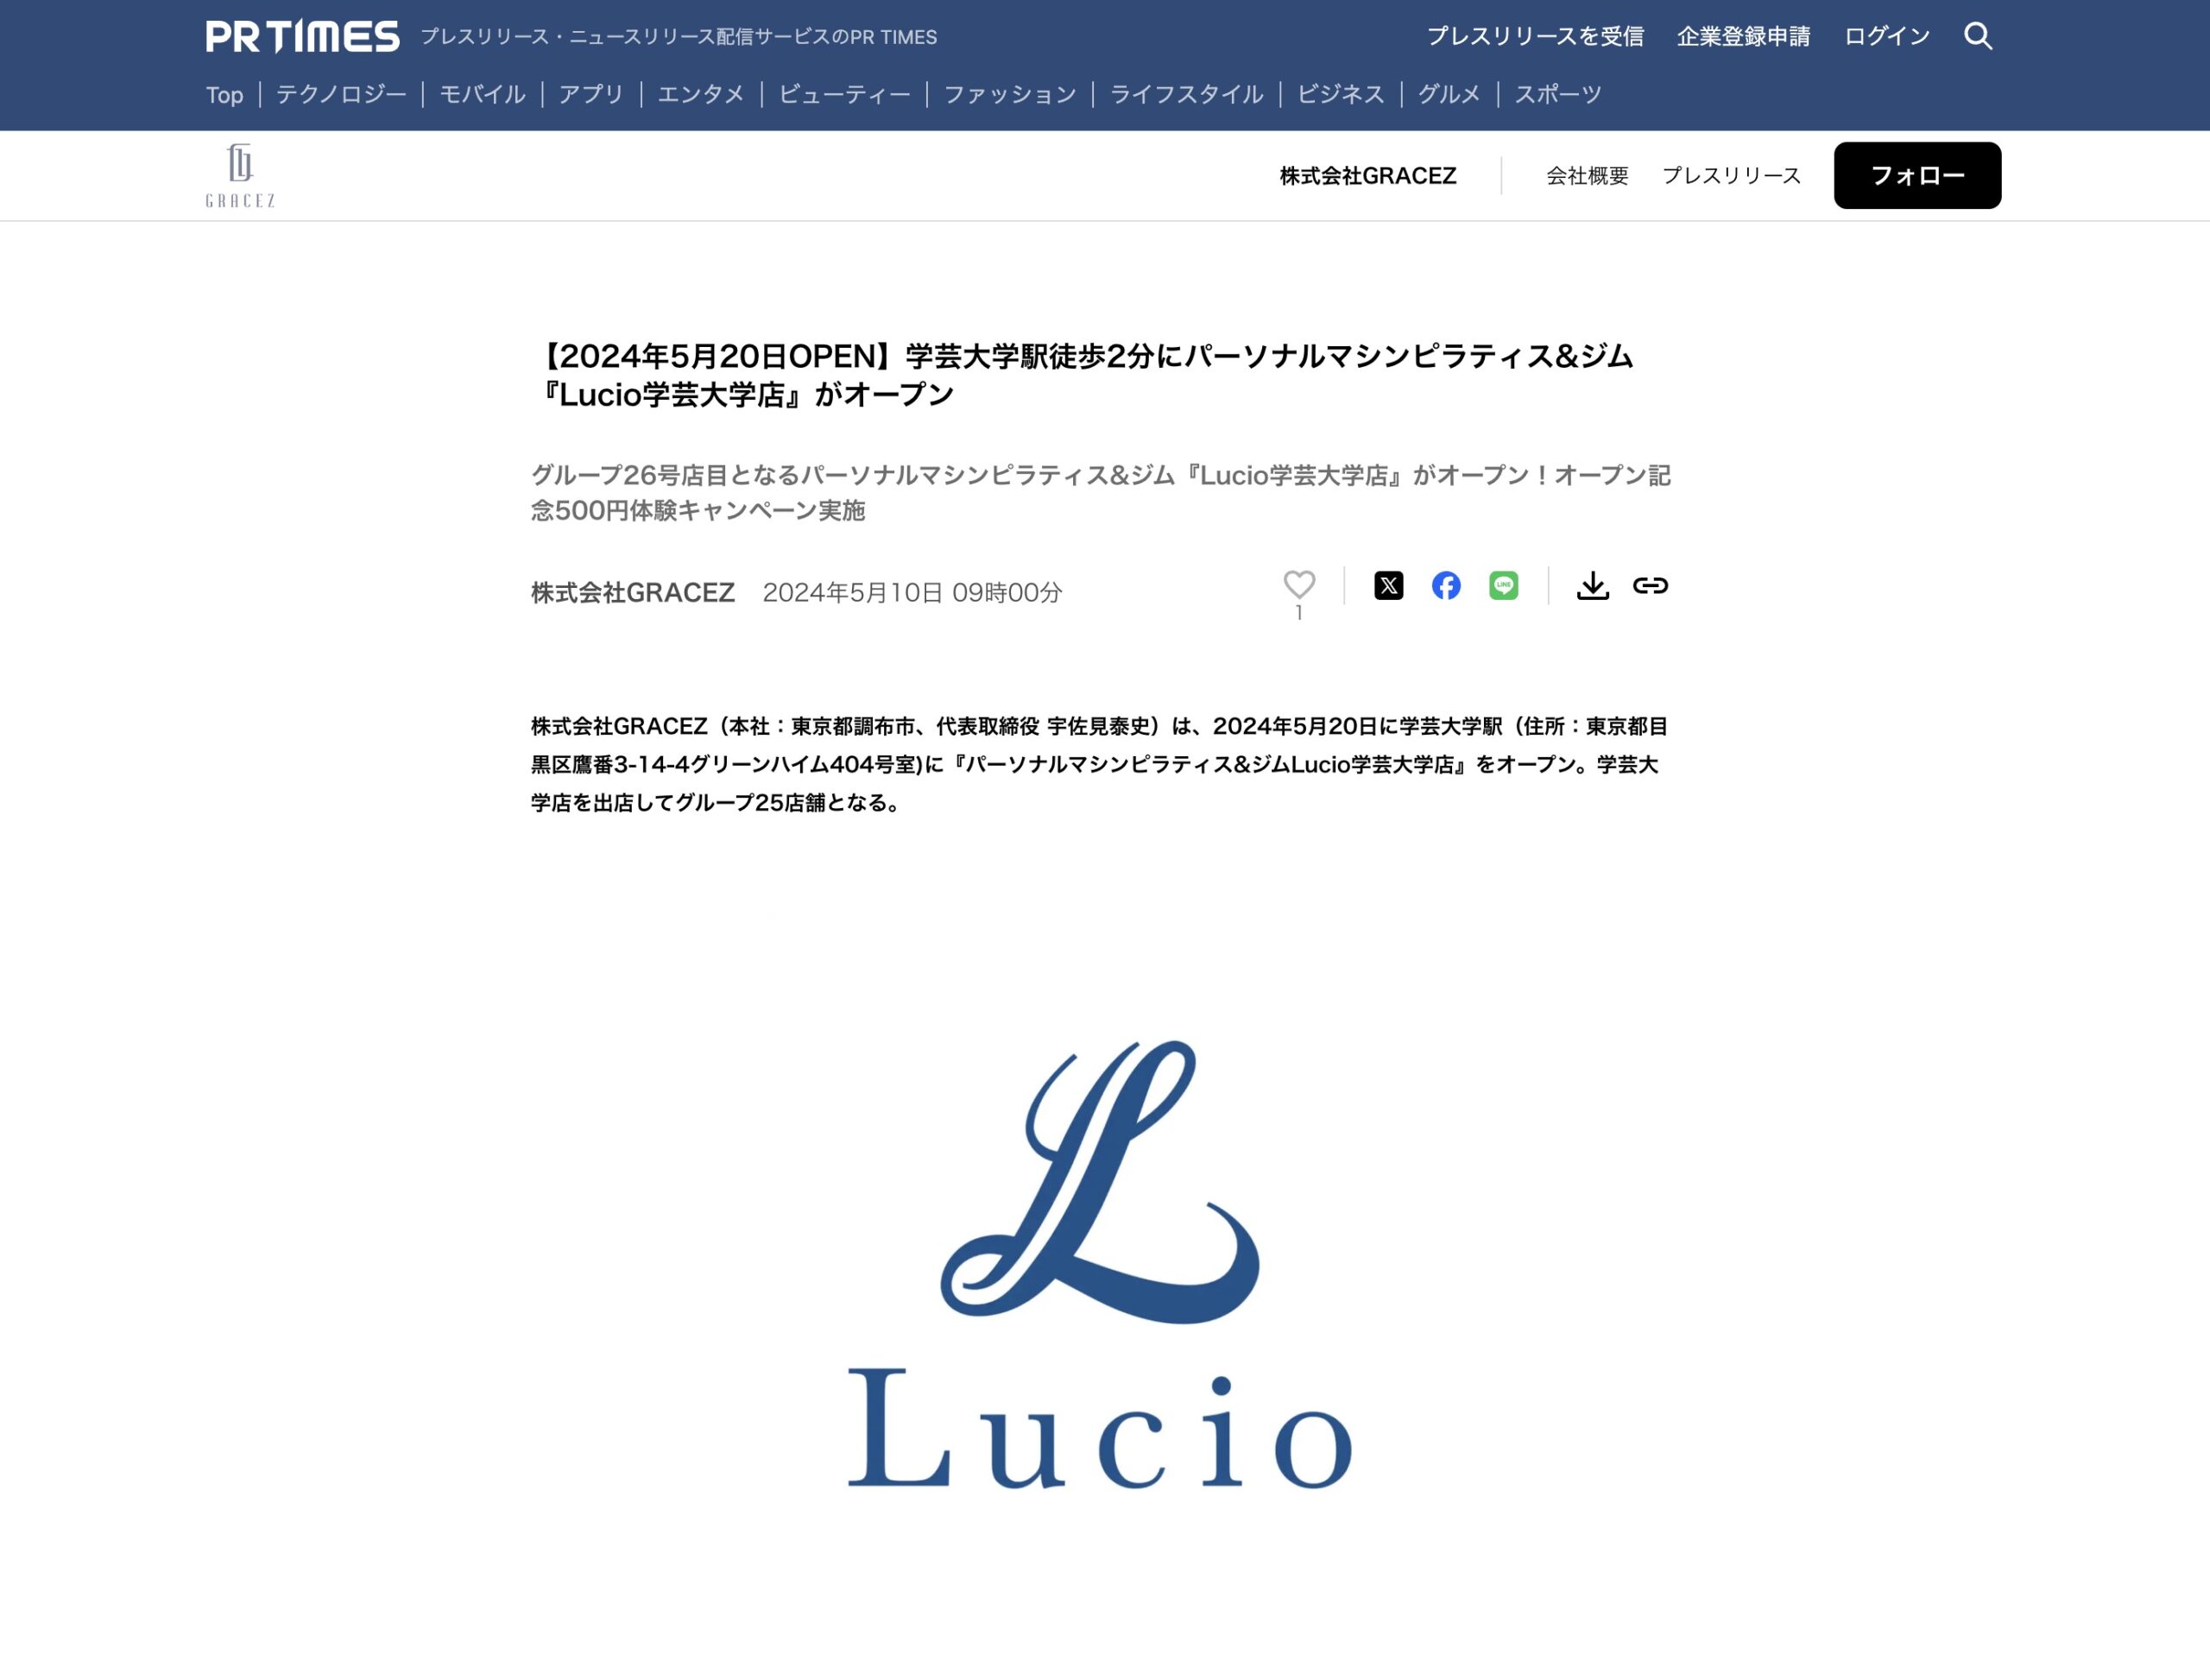 「PR TIMES」にてパーソナルマシンピラティス&ジム『Lucio学芸大学店』オープンのプレスリリース配信